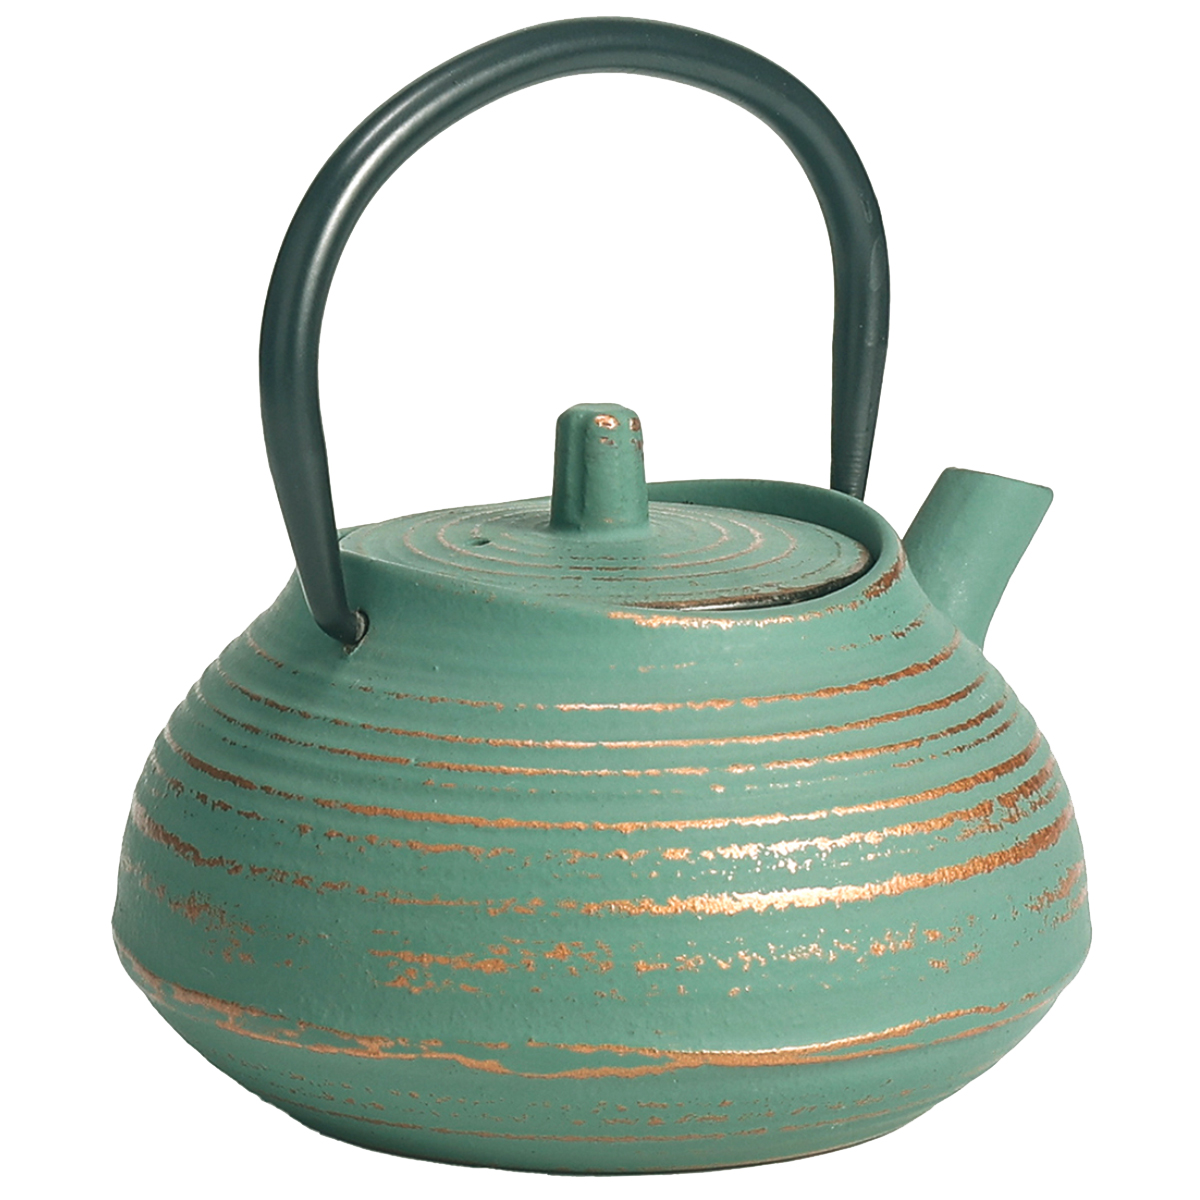 Japanese style cast iron teapot 0.4 liter